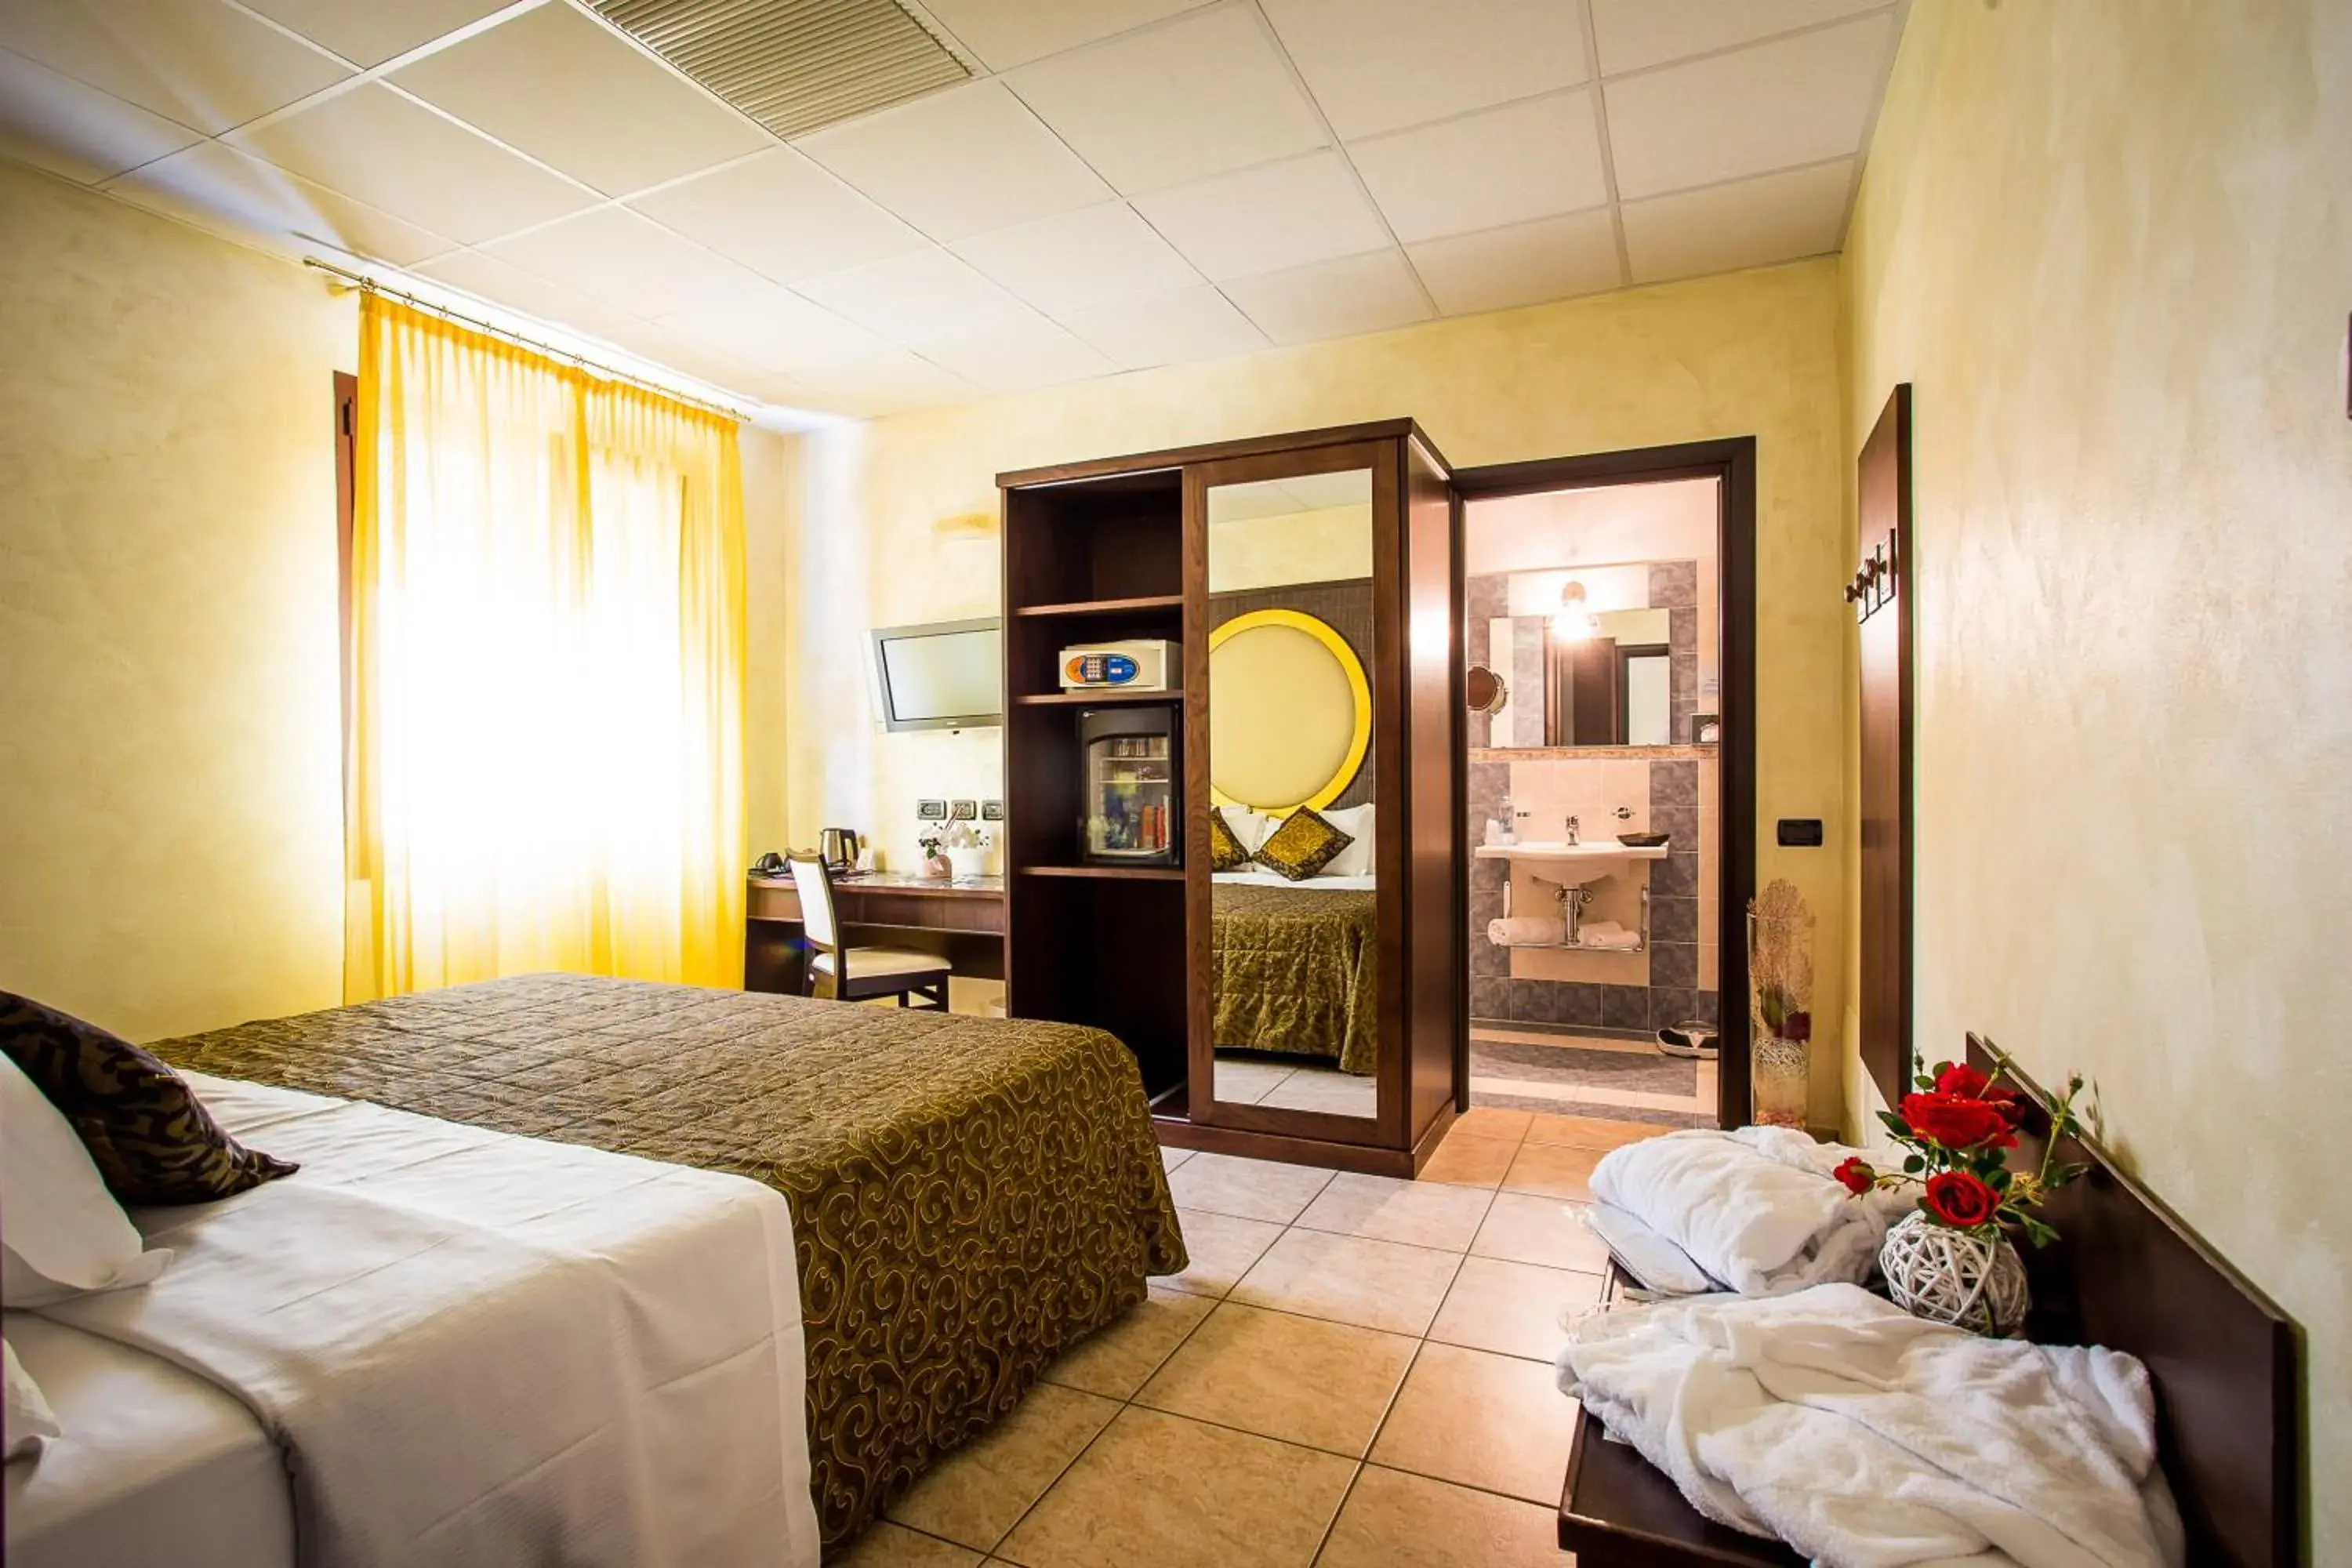 Shower, Room Photo in Piccolo Hotel Nogara